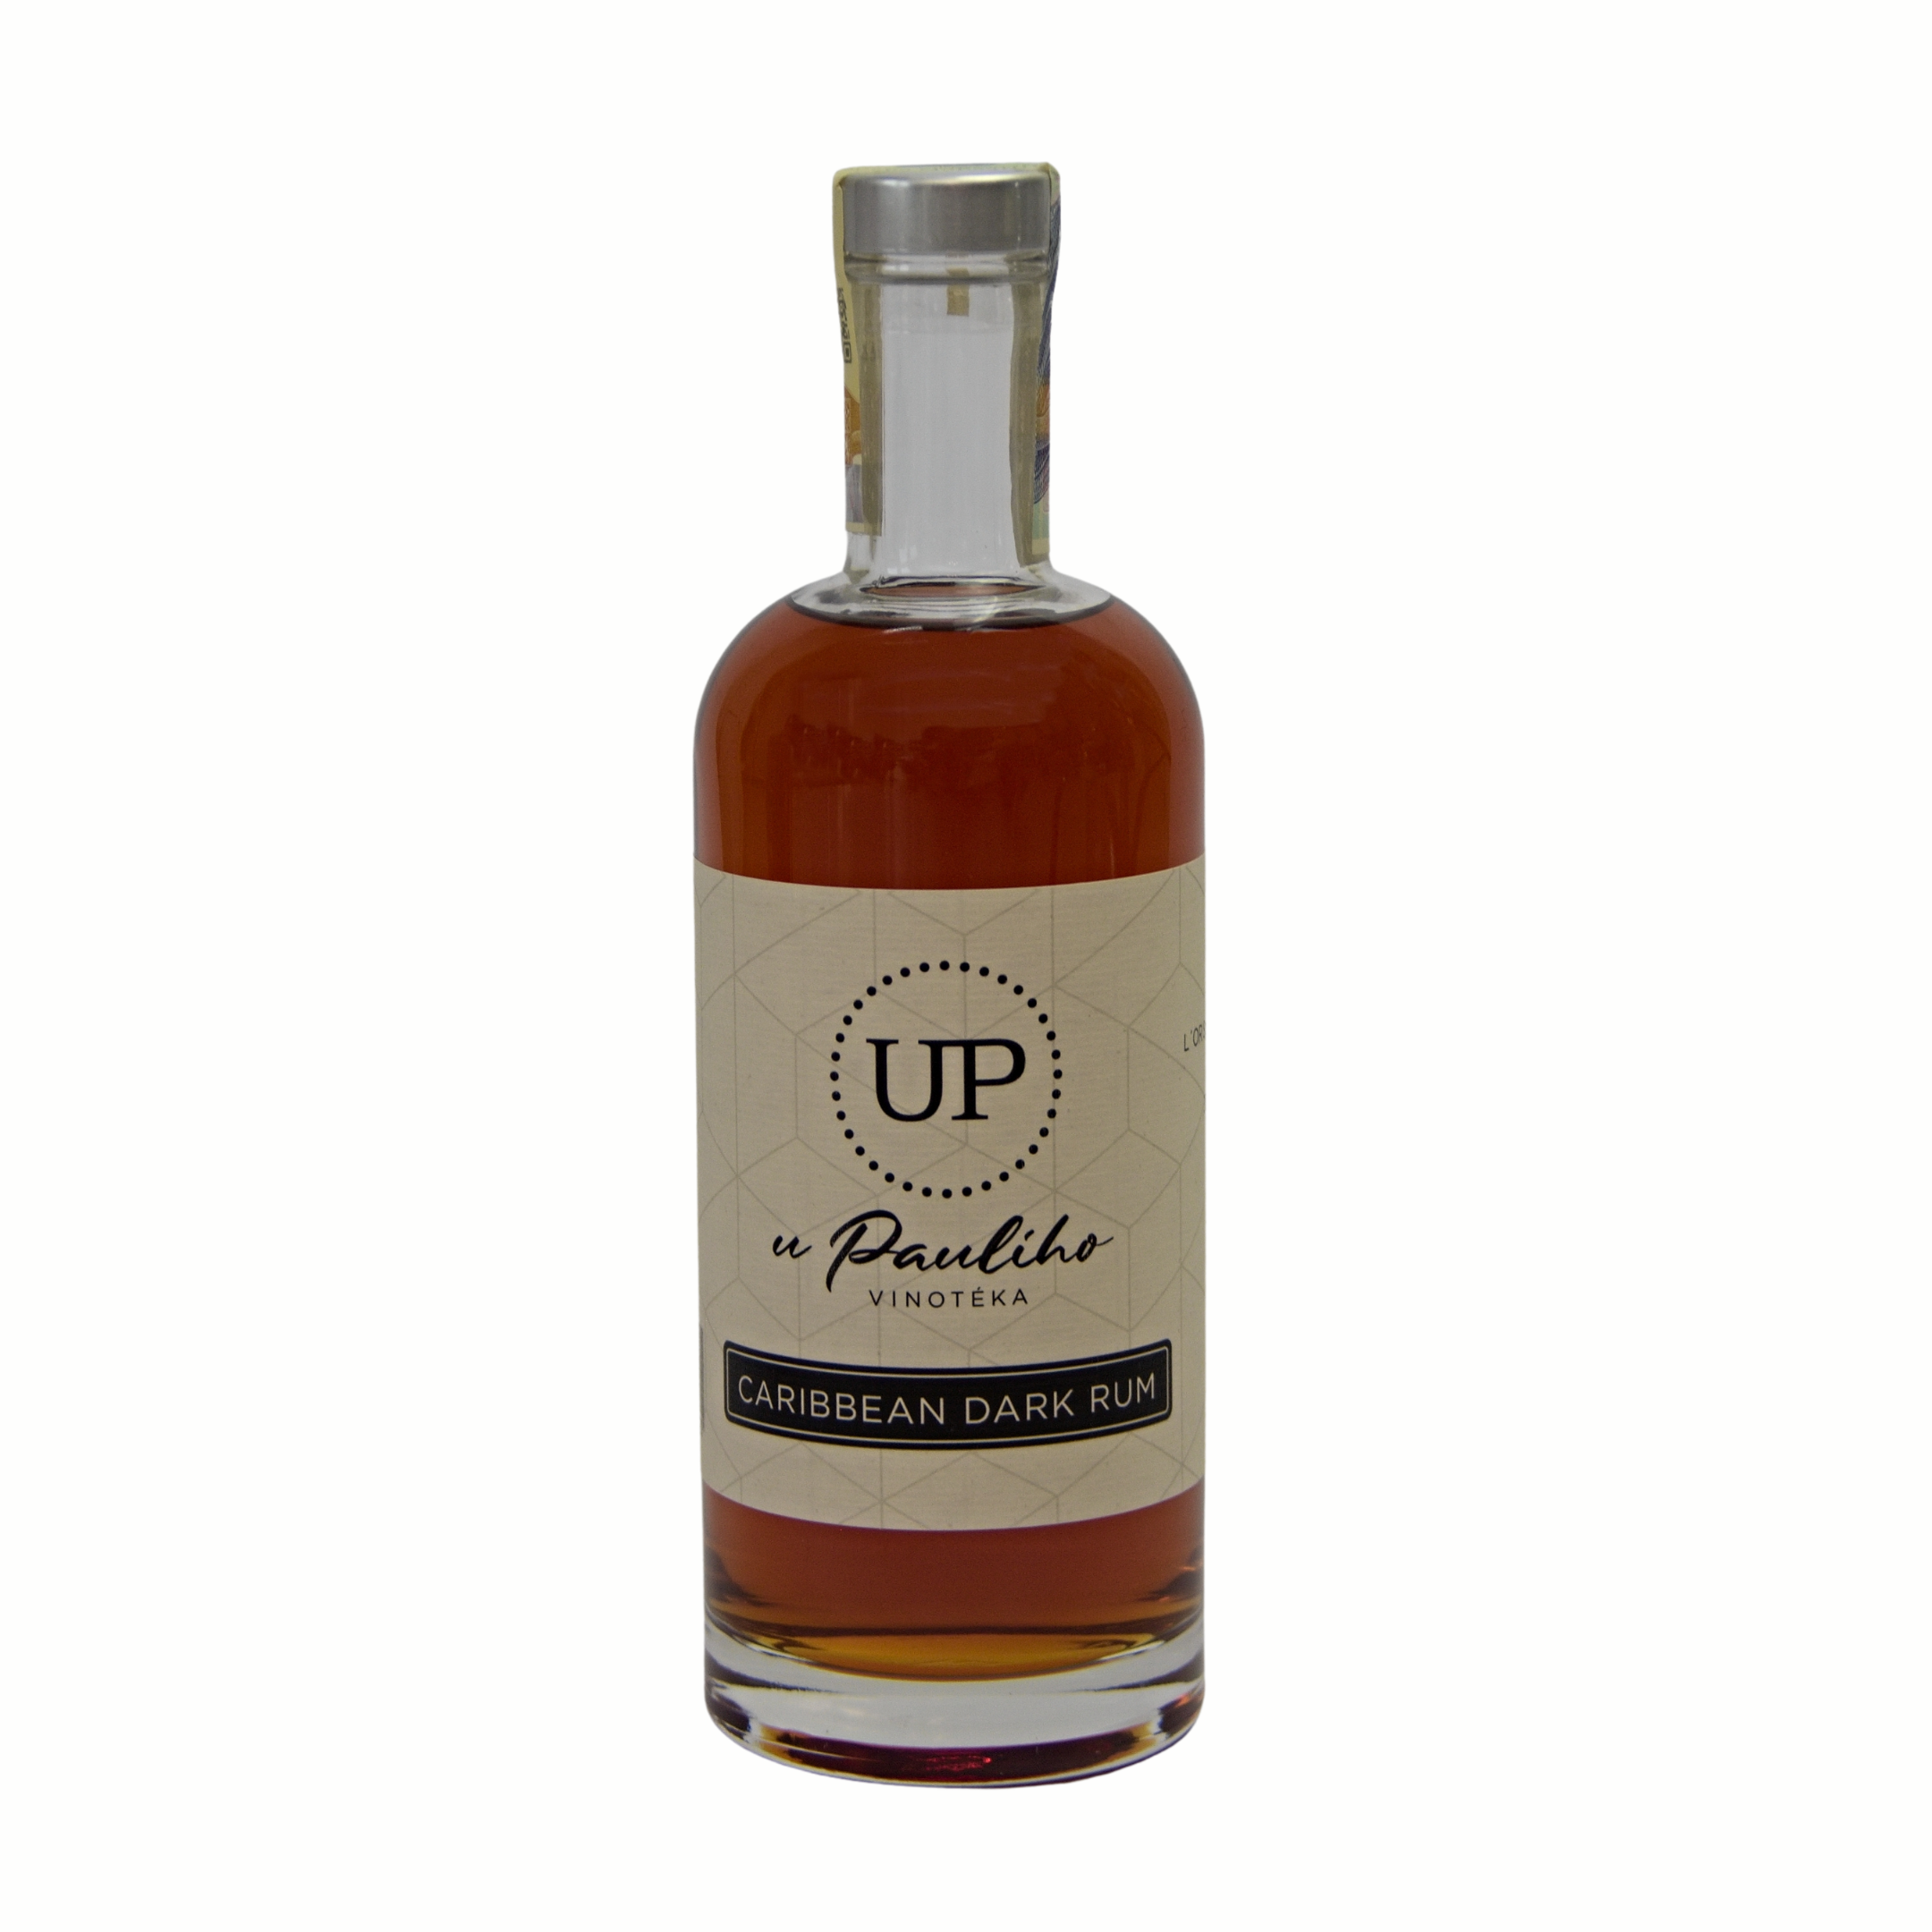 Vinotéka u Paulího U Paulího Caribbean dark rum, 37,5%, 0,7l